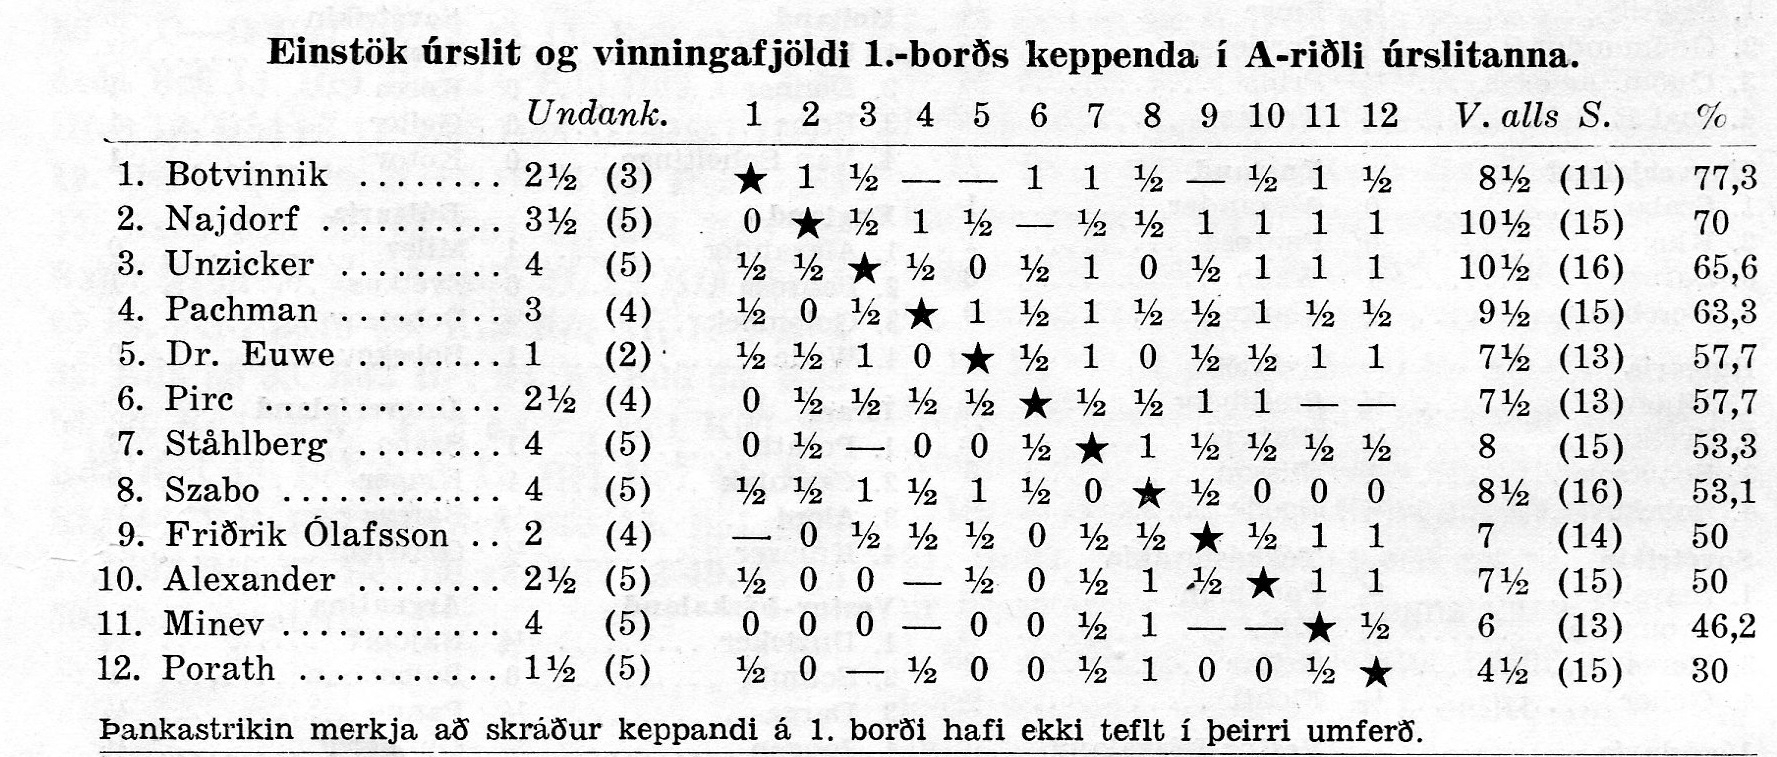 1954 Ólympíumótið - árangur 1. borðs manna